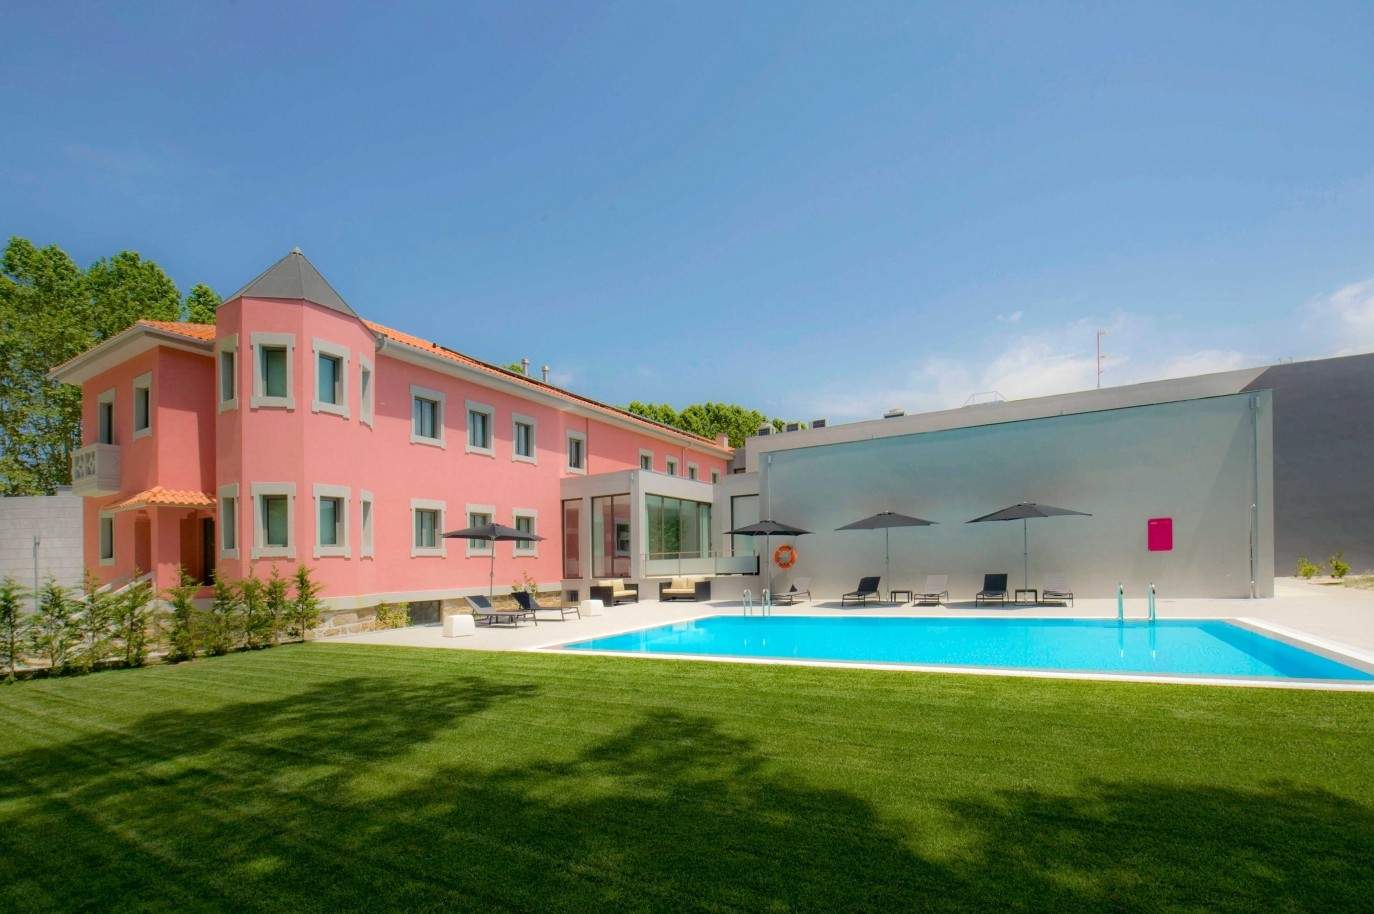 Hôtel avec jardin et piscine, situé dans la zone thermale, Vidago, Portugal_61381